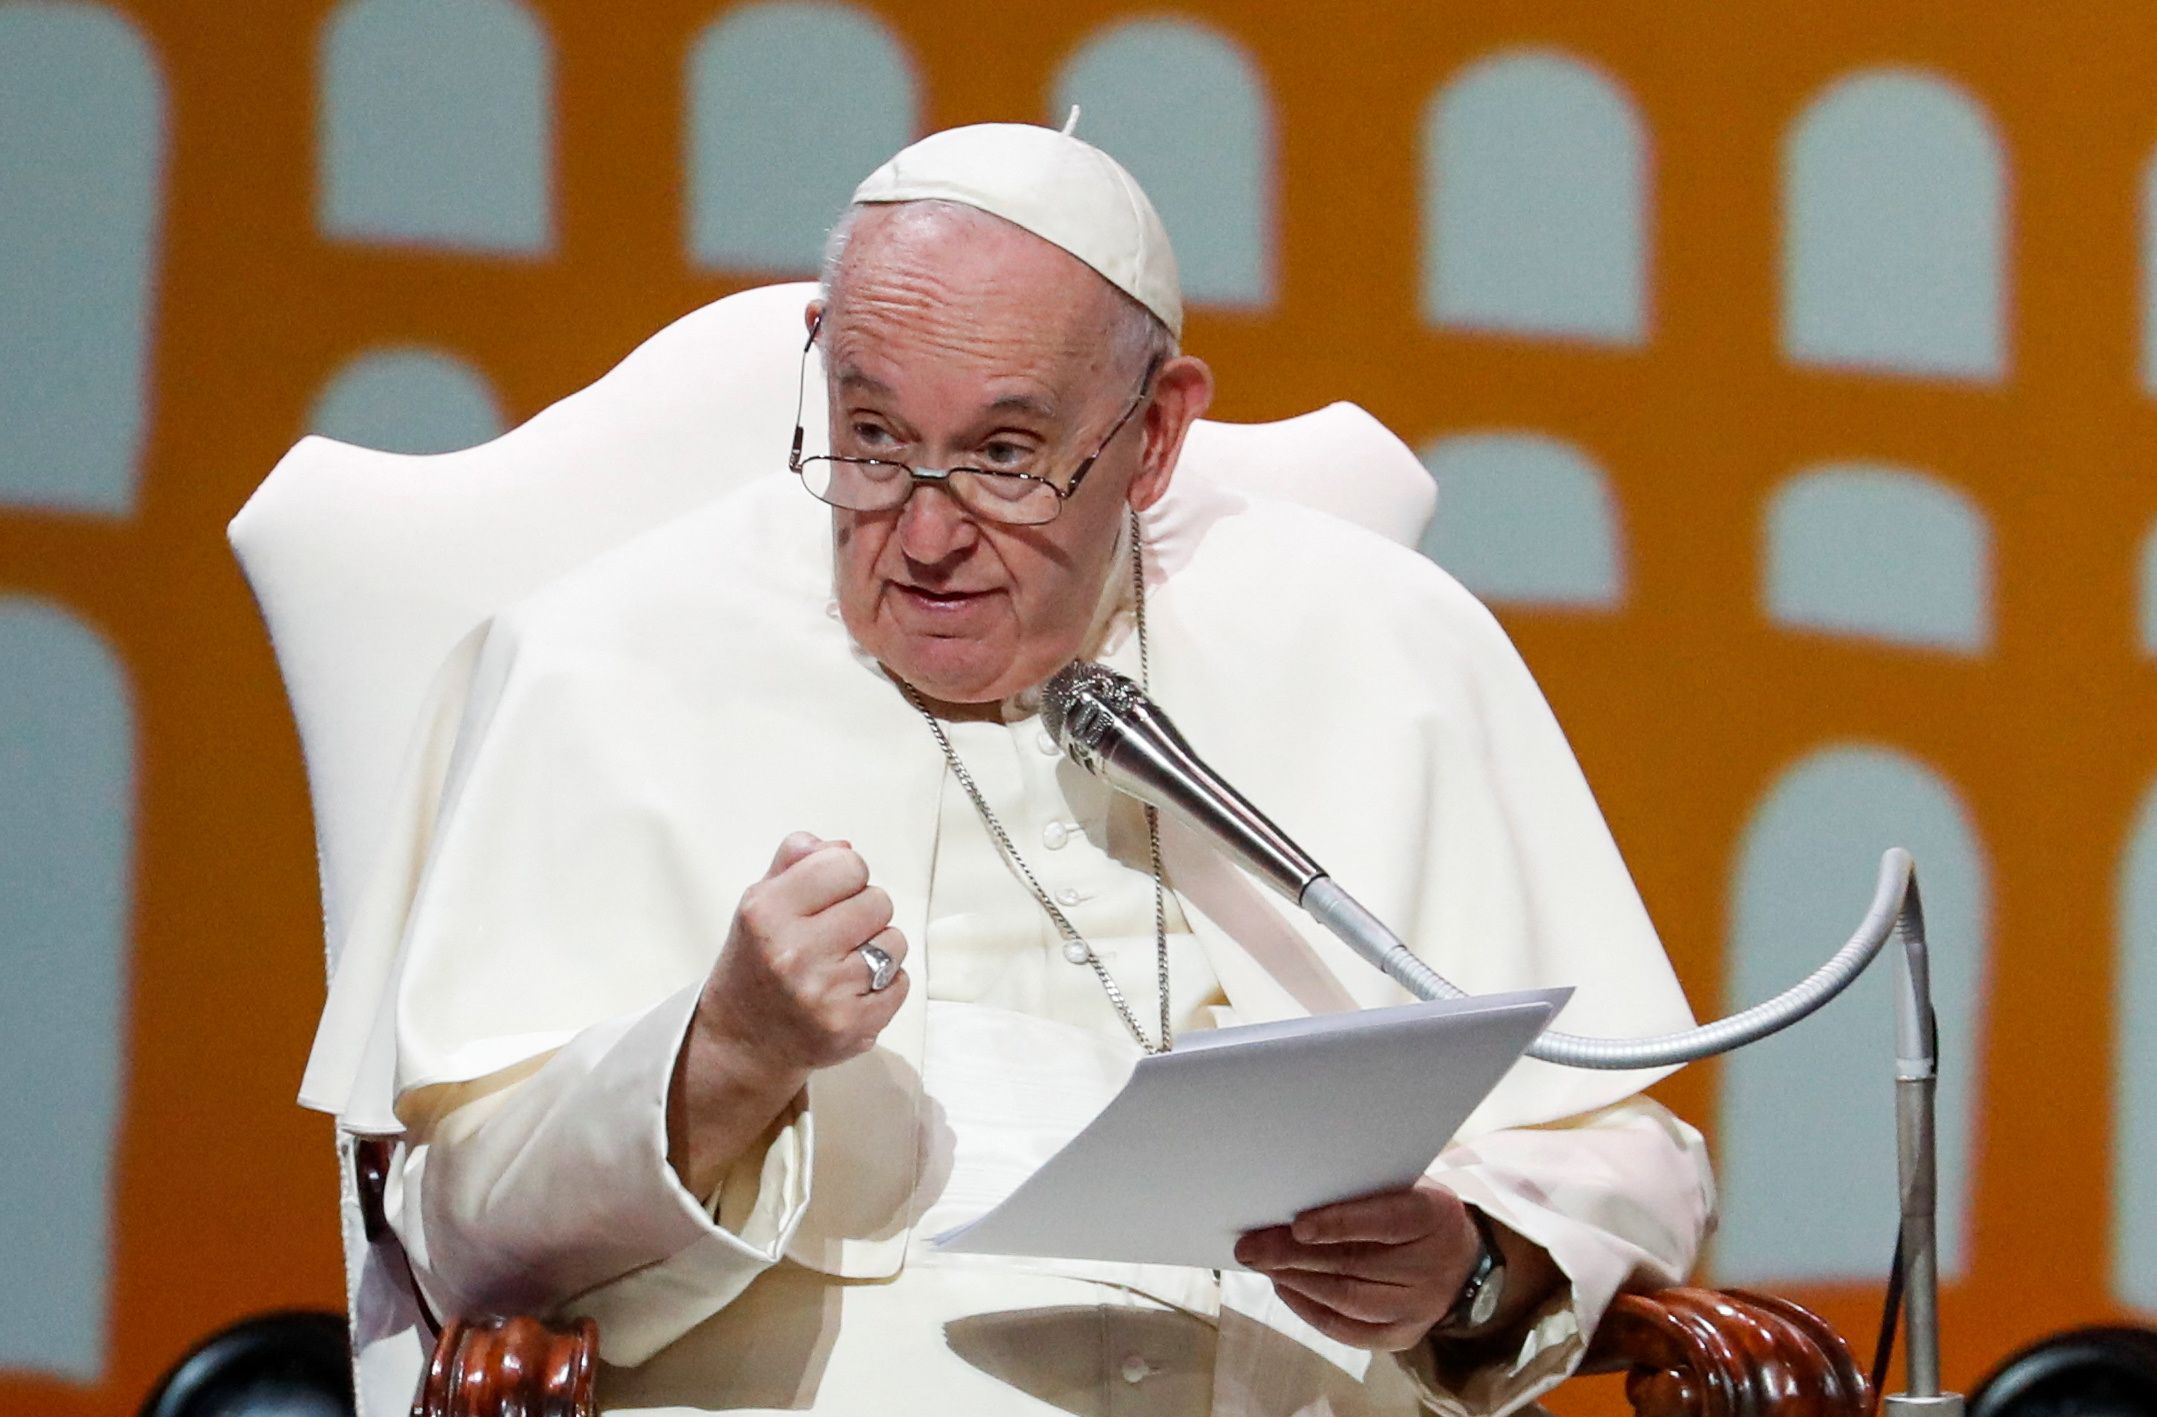 El Papa Francisco habla mientras asiste a una reunión durante su visita en Asís, Italia, el 24 de septiembre de 2022 (REUTERS)